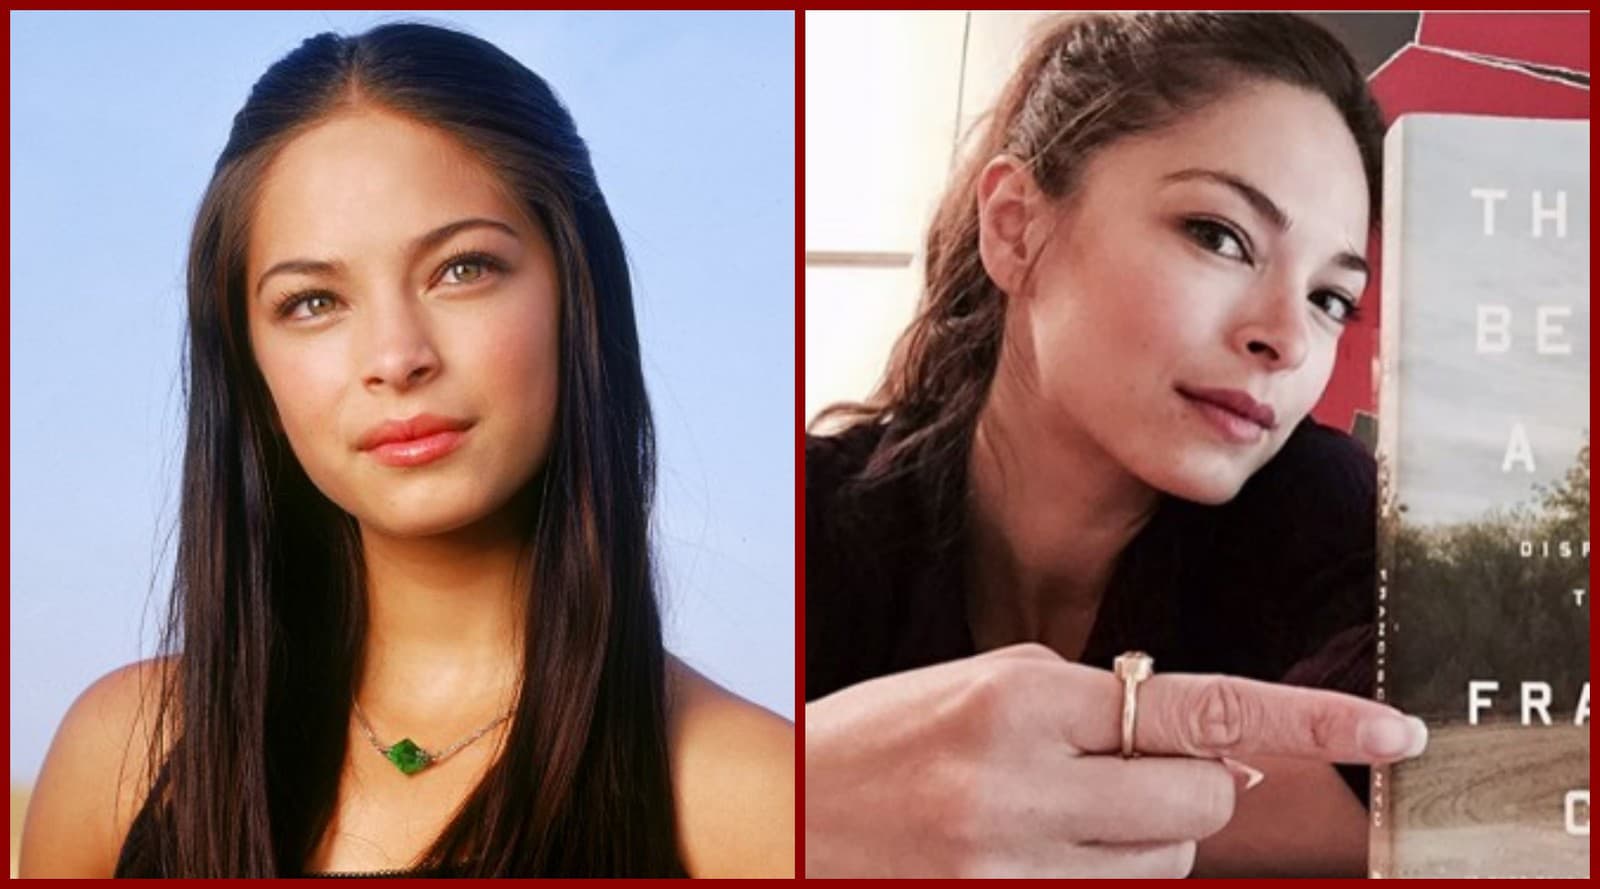 Starne ona vôbec? Rozdiel medzi foto je 17 rokov. (Zdroj: Photo © The WB Television Network, The CW Television Network, Instagram/Kristin Kreuk)